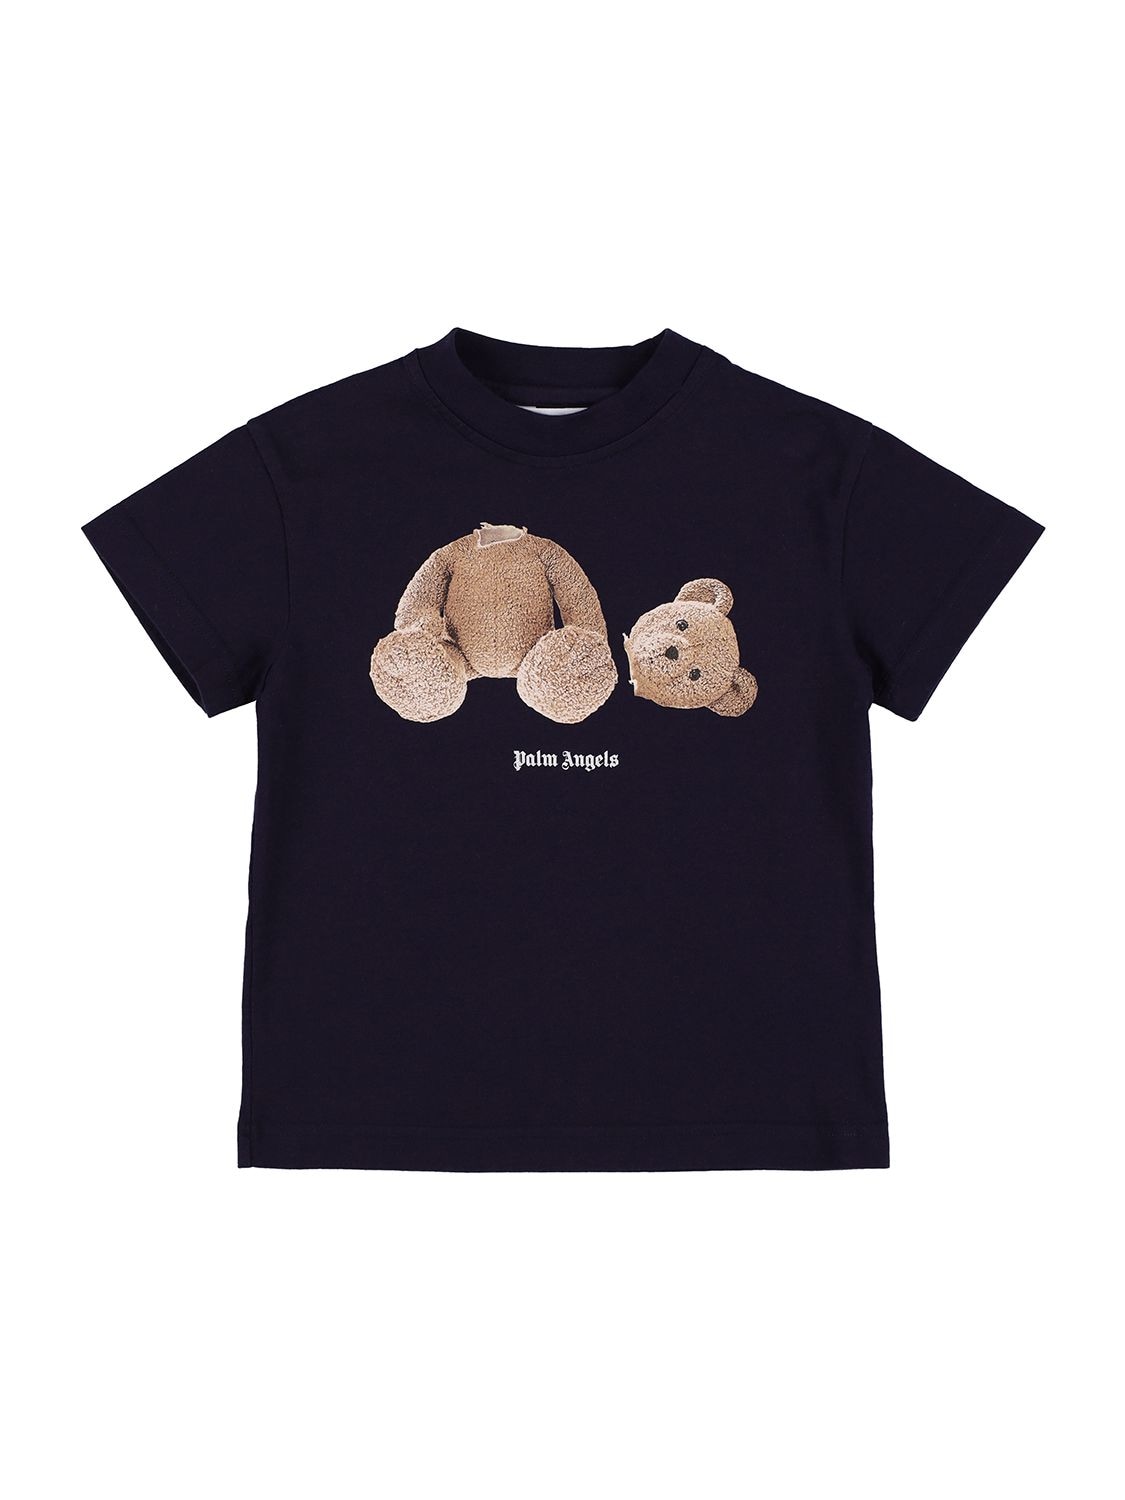 Bear Print Cotton Jersey T-shirt